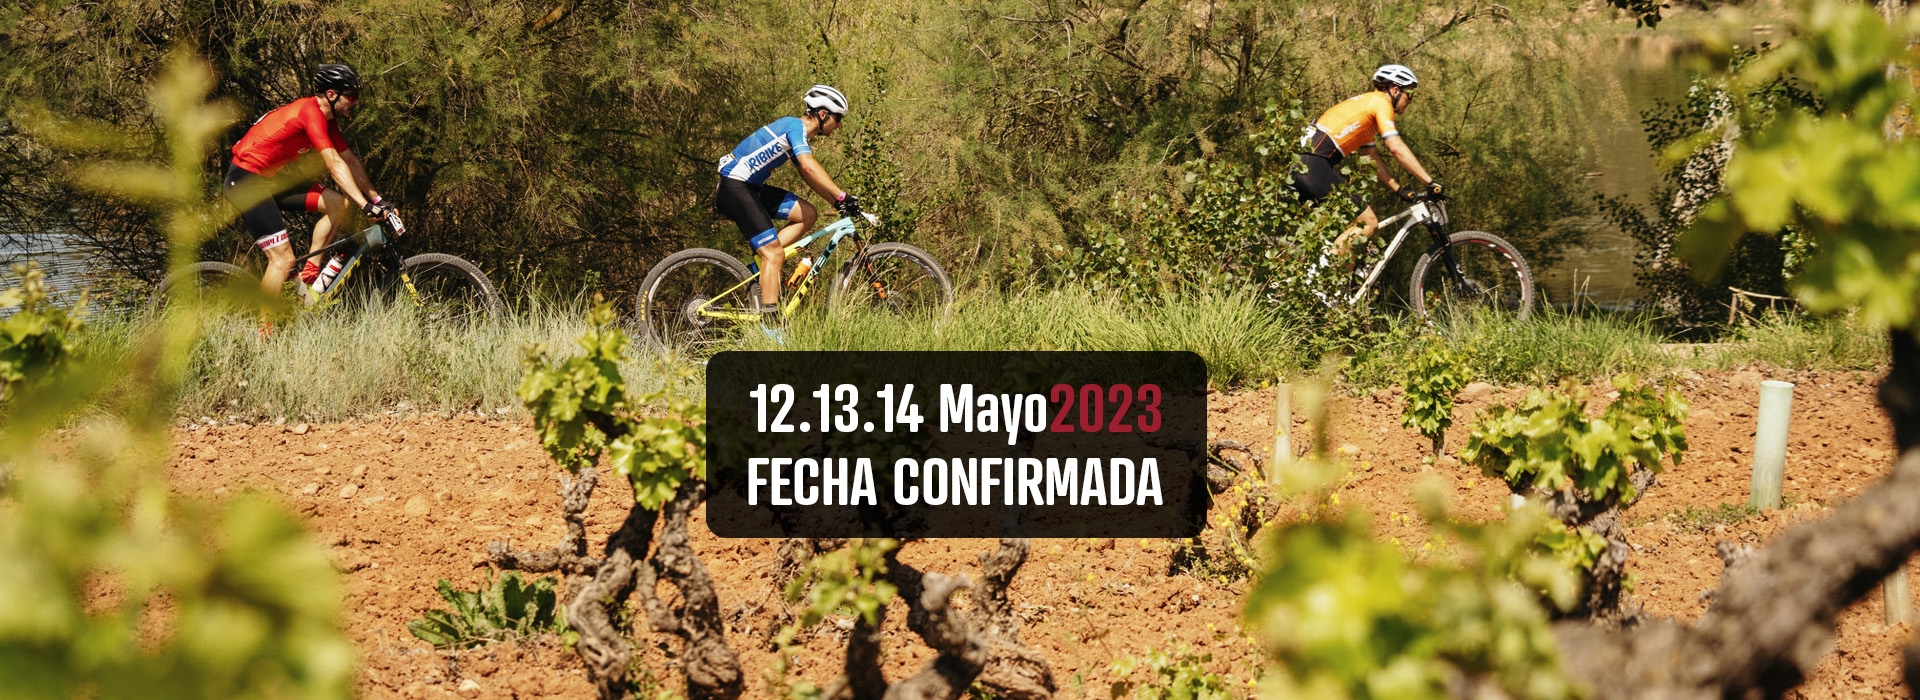 La 9ª edición de La Rioja Bike Race presented by Pirelli mantiene sus fechas habituales